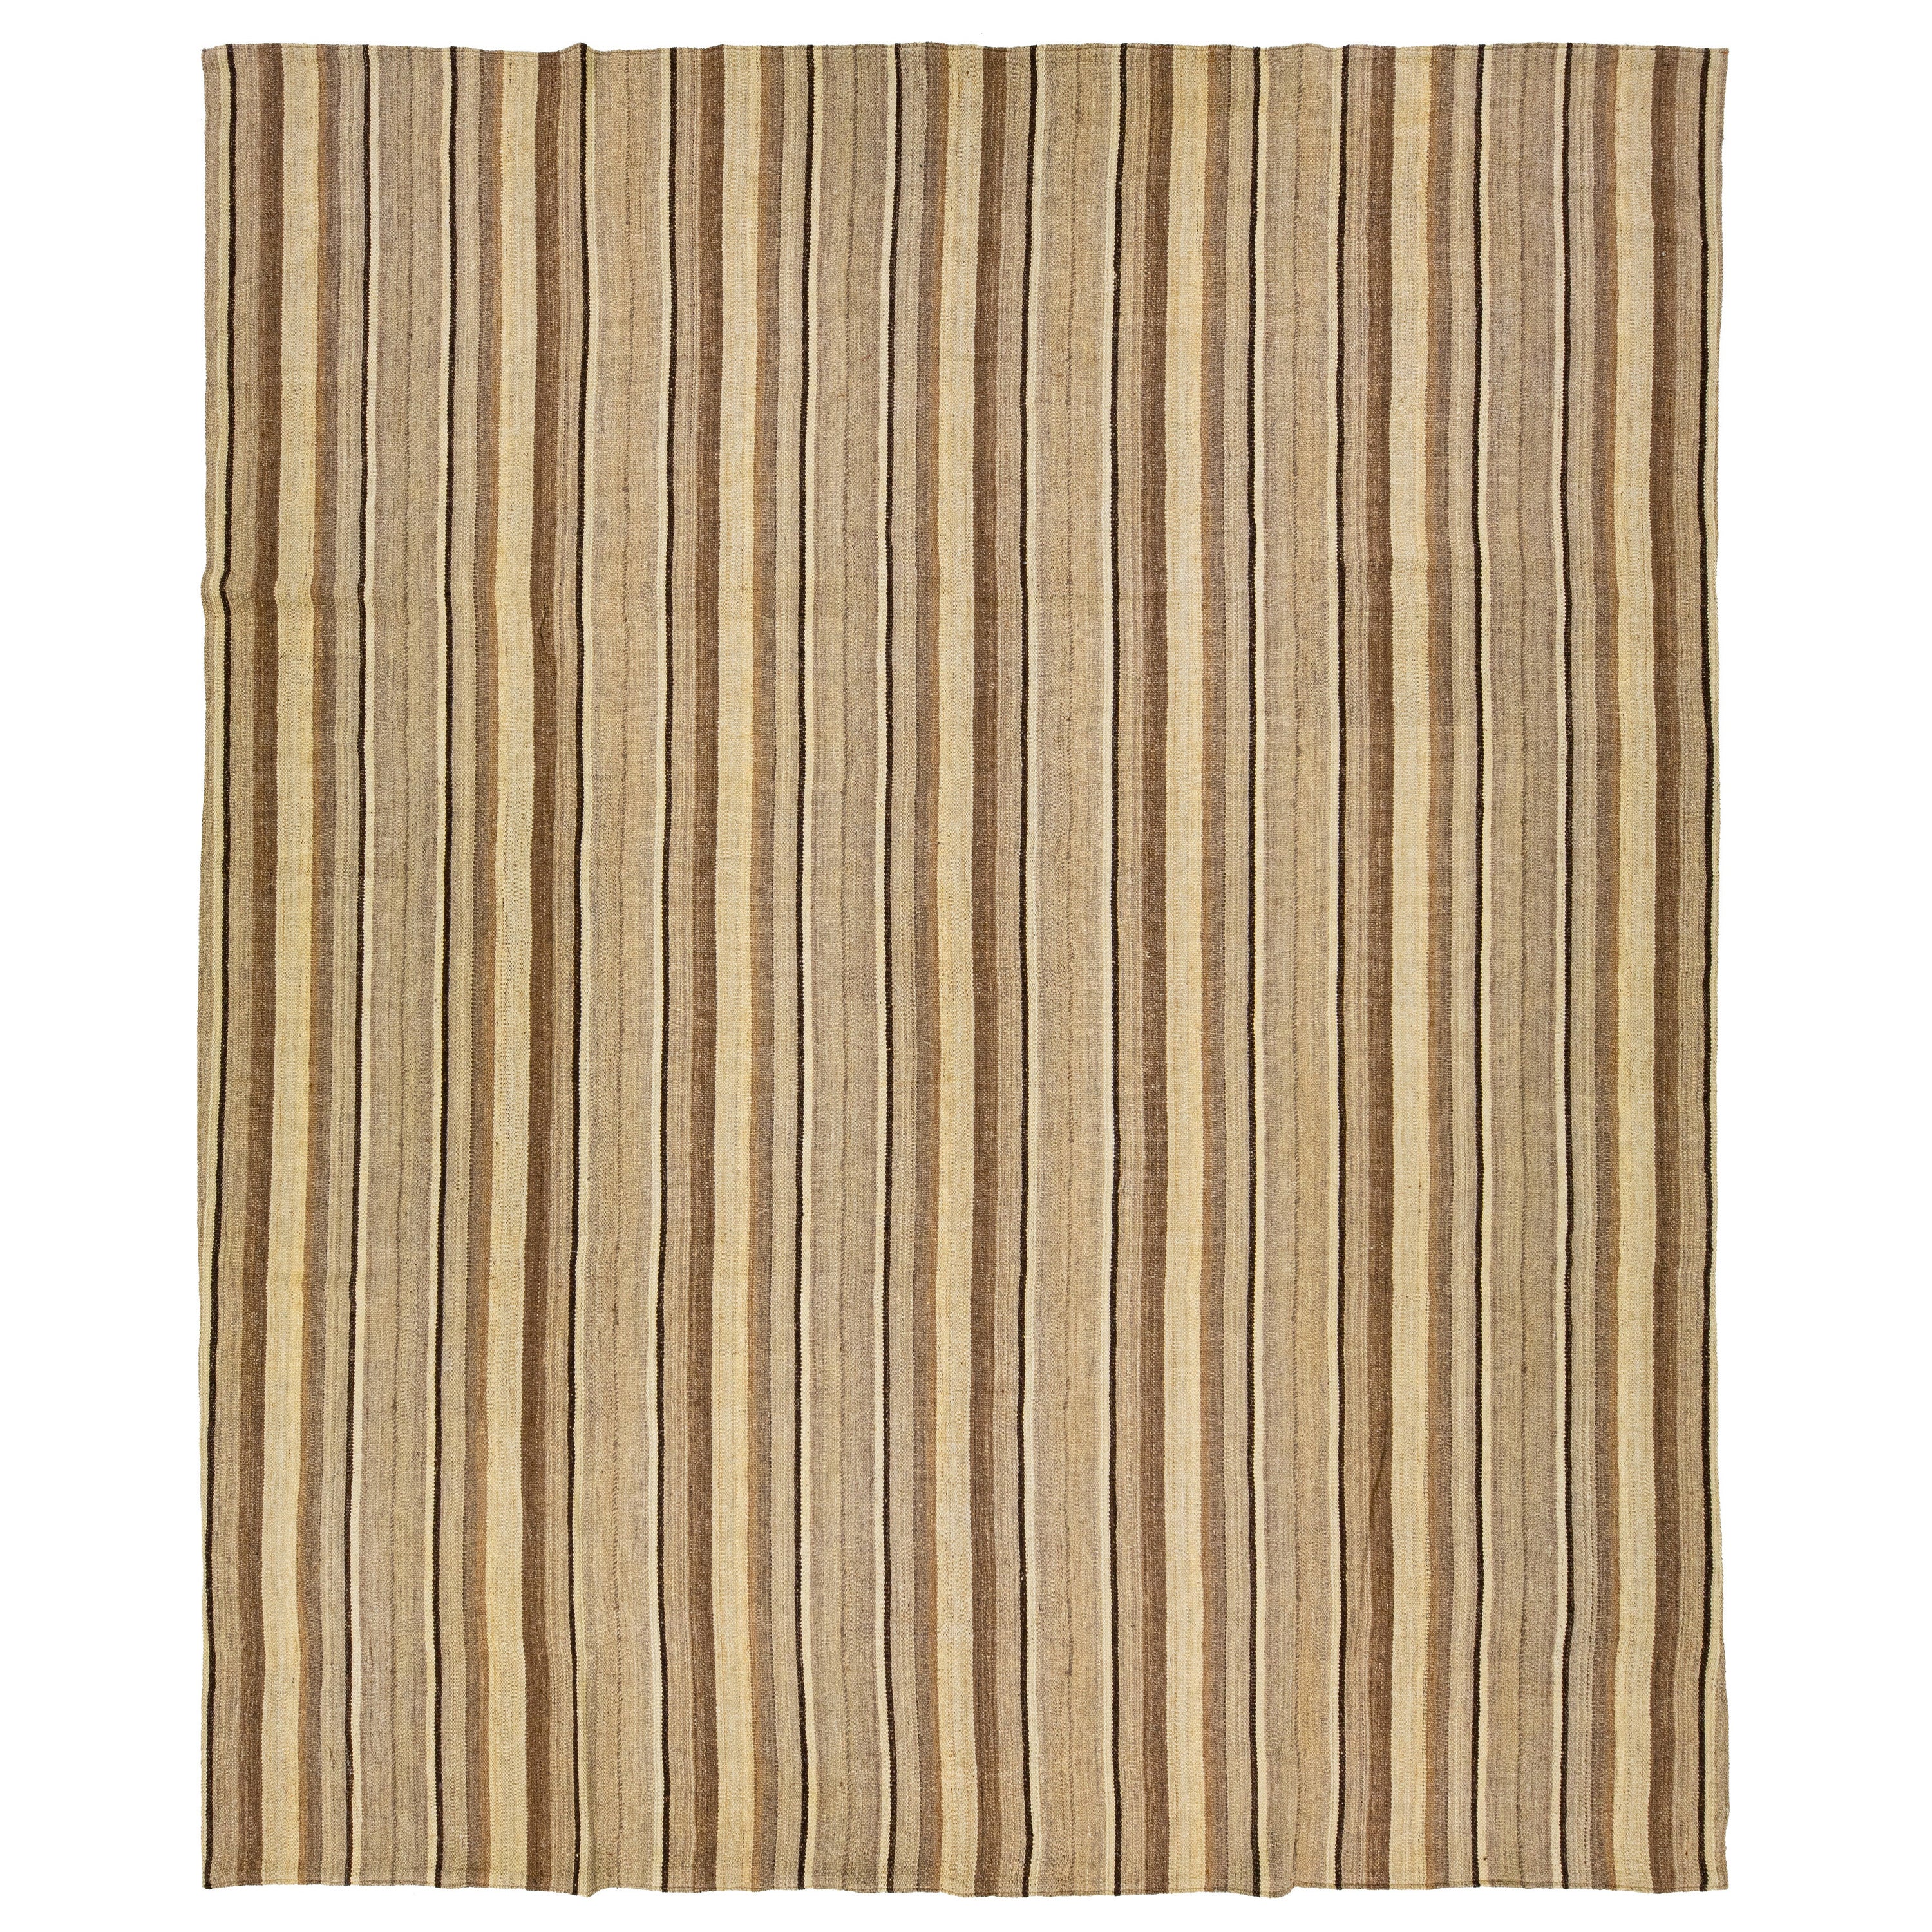 Moderner flachgewebter Kelimteppich aus Wolle mit beigen und braunen Streifen